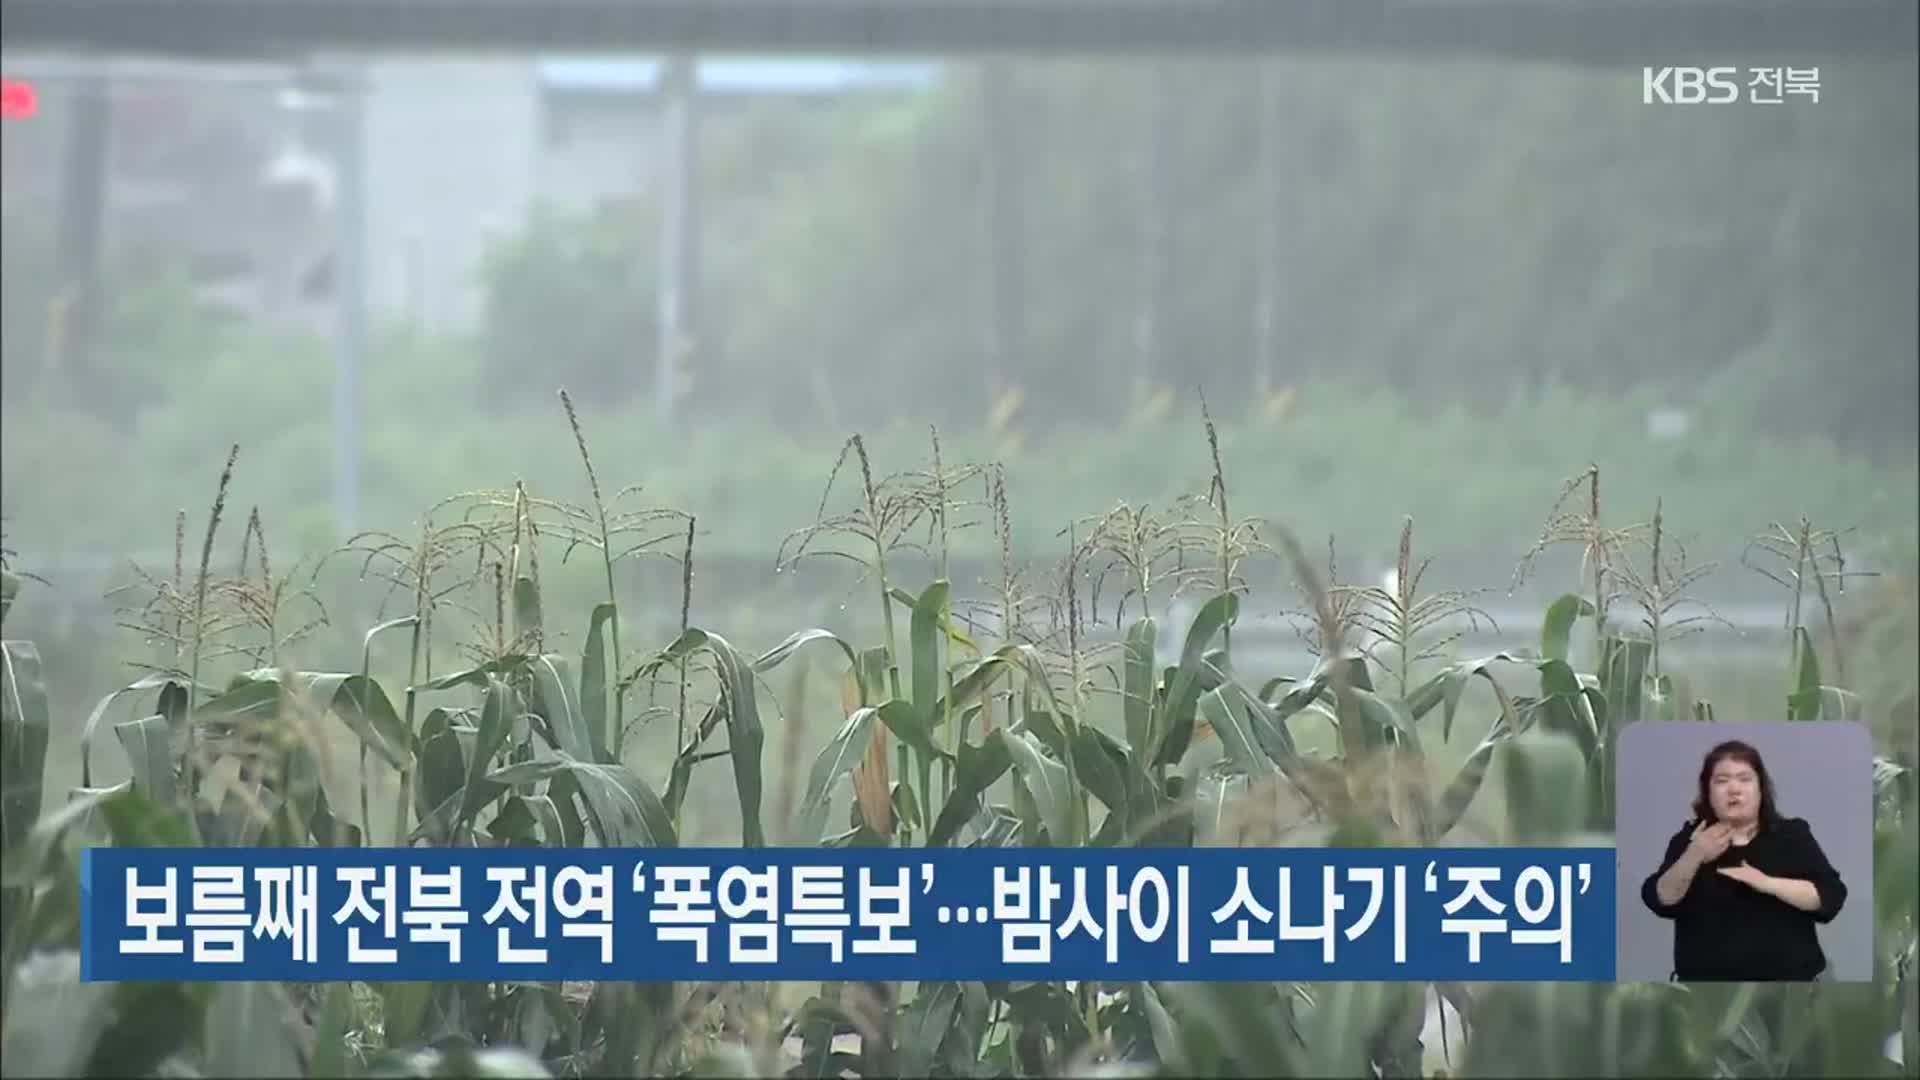 보름째 전북 전역 ‘폭염특보’…밤사이 소나기 ‘주의’